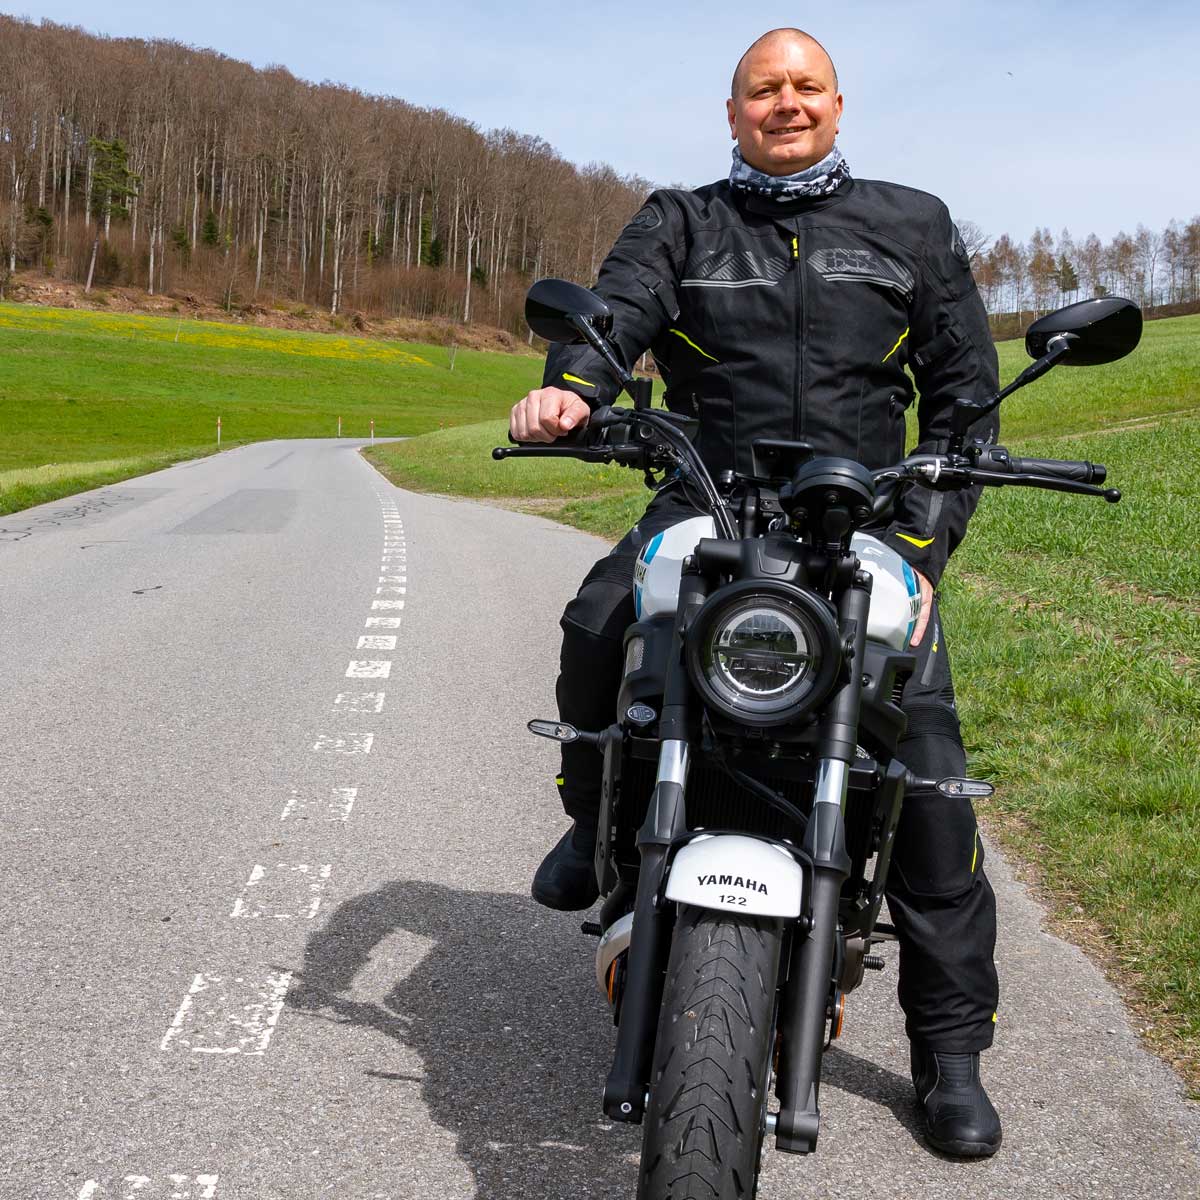 Reto Richard, moto-lifestyle.ch / Bekleidung: Sport Jacke und Hose Carbon-ST von iXS